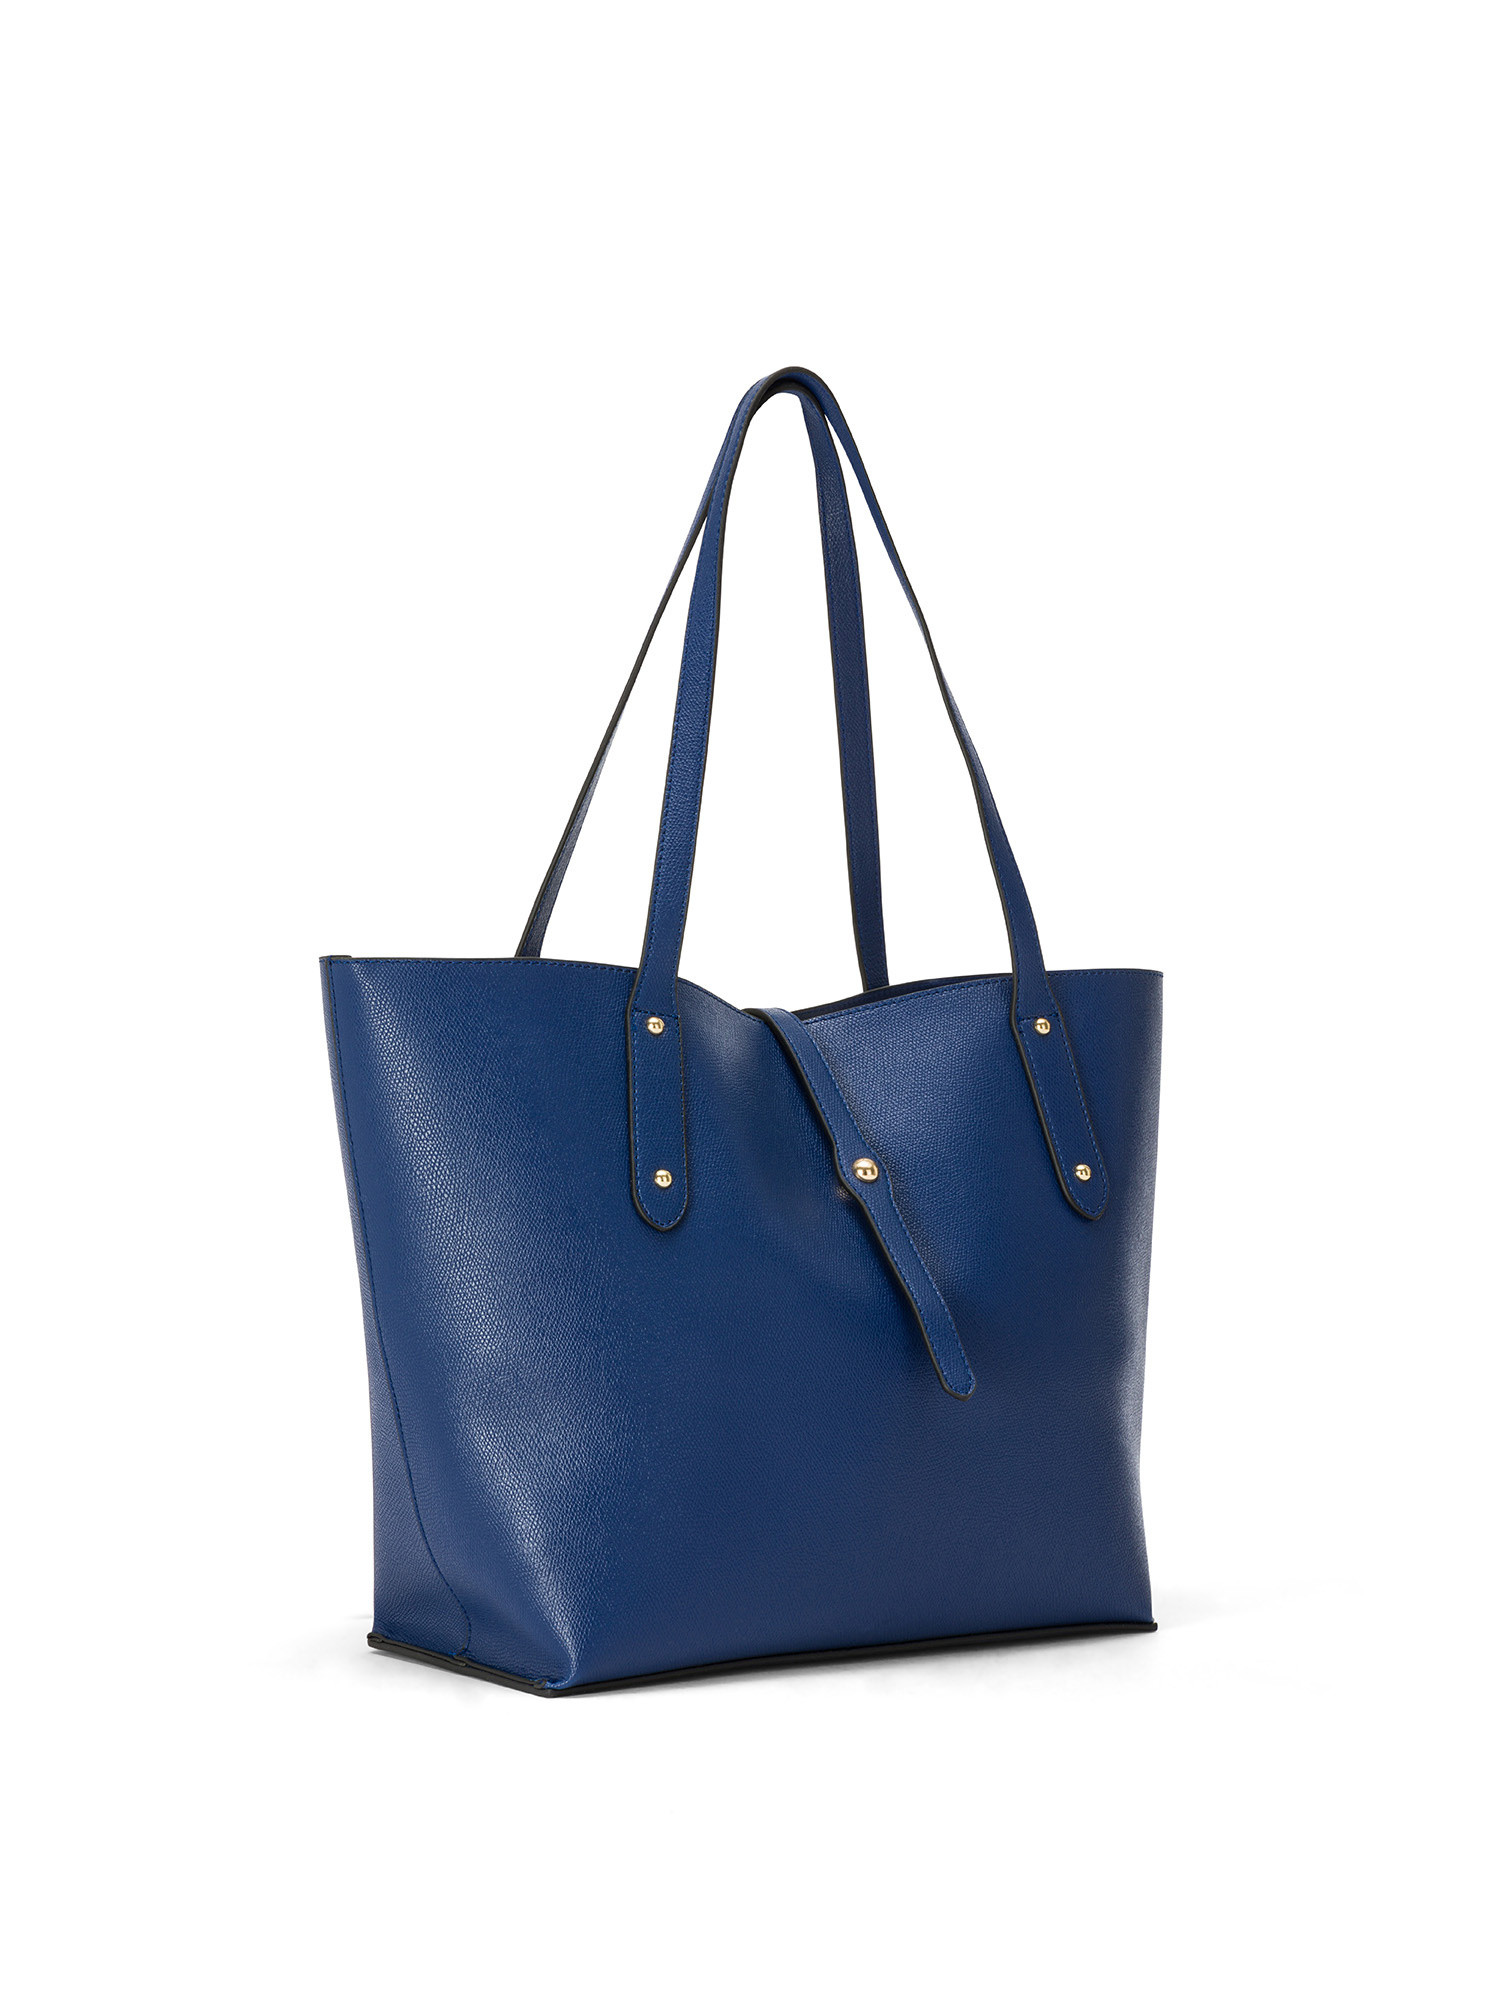 Koan - Shopping bag, Royal Blue, large image number 1